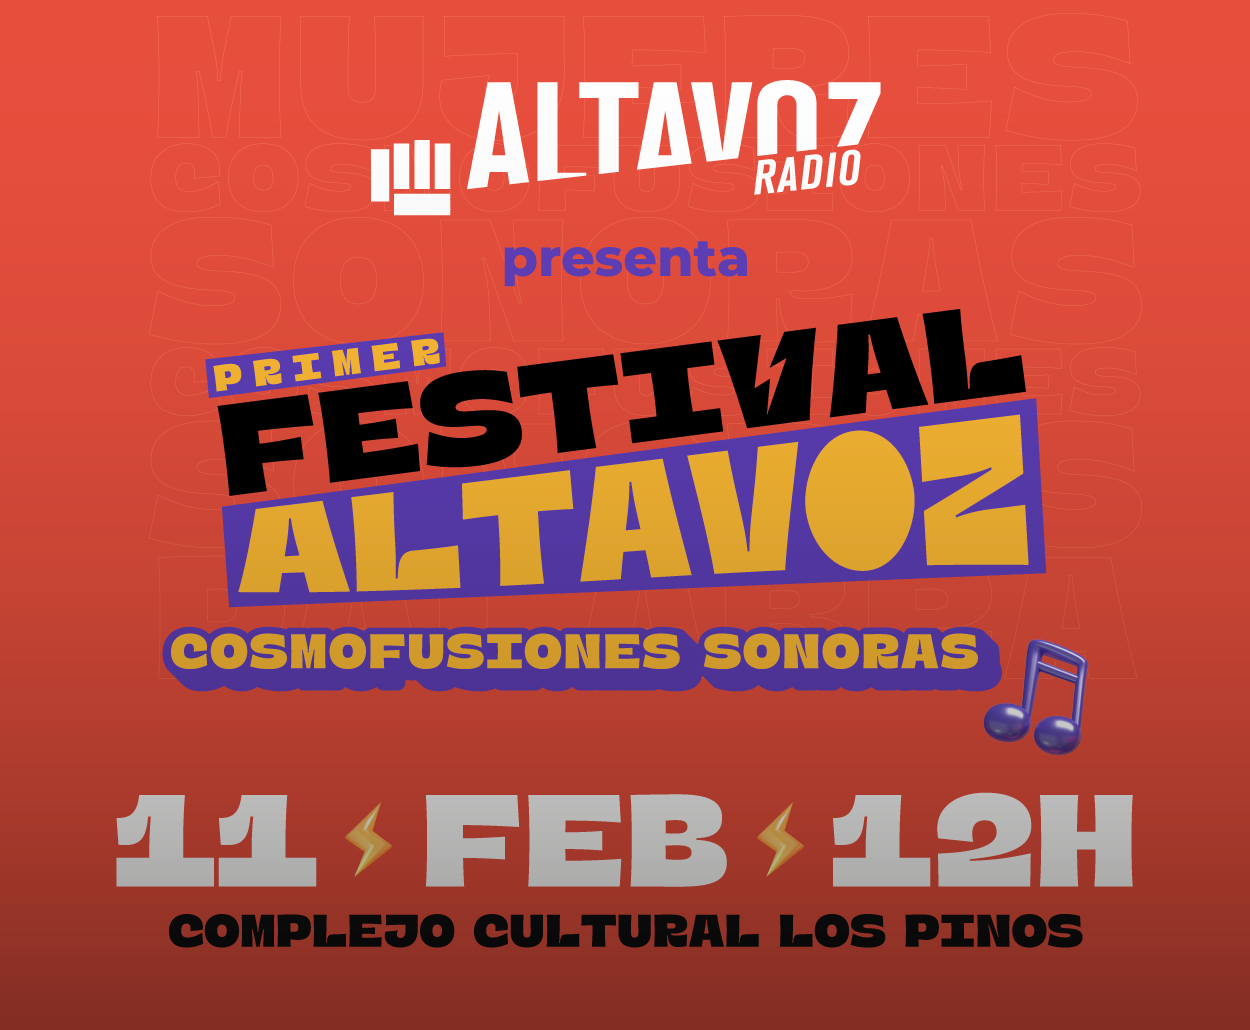 Altavoz Radio, la red radiofónica del SPR, celebra su tercer aniversario con el Primer Festival Altavoz, Cosmofusiones Sonoras 